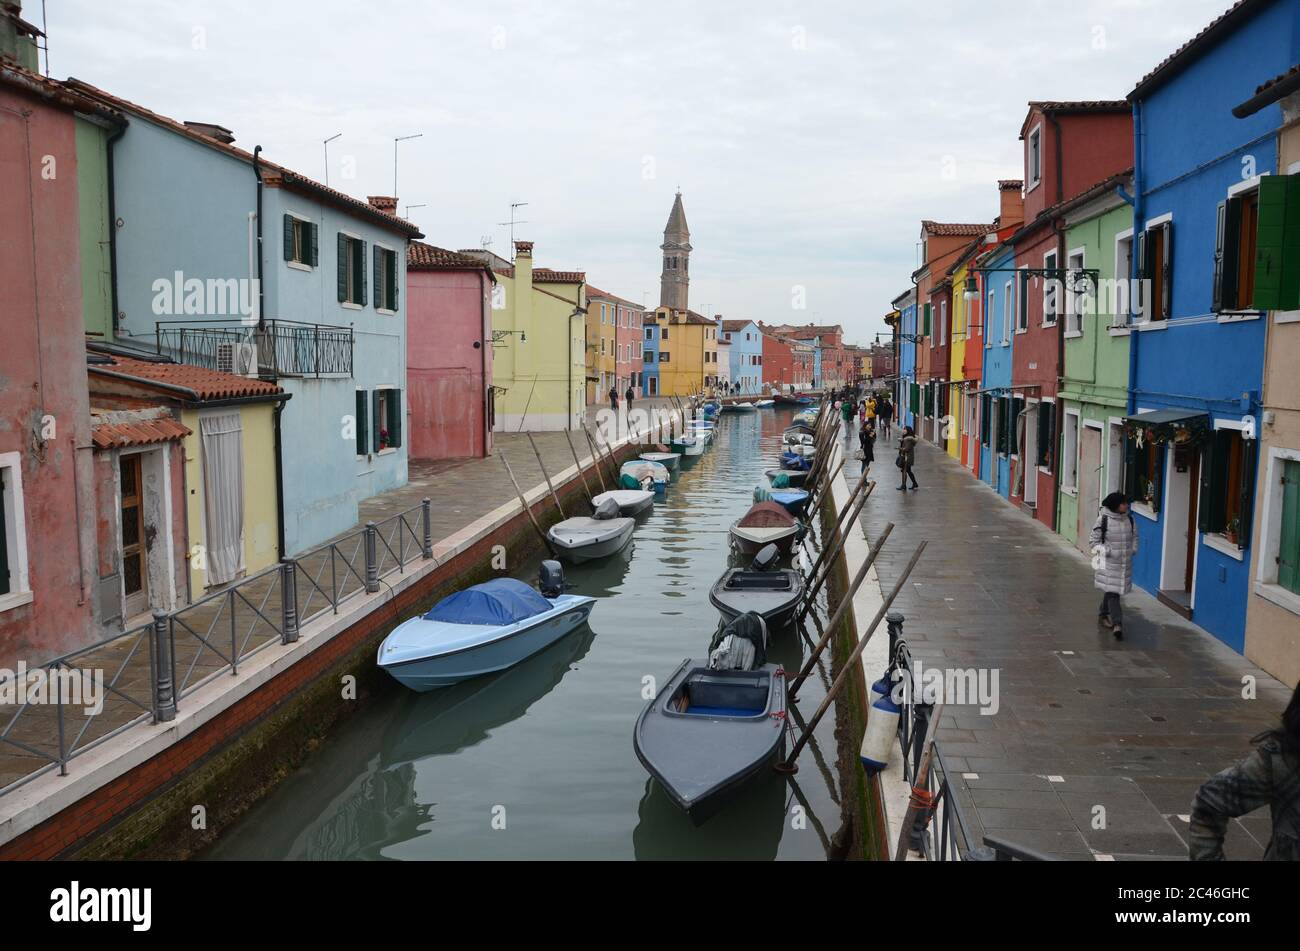 BURANO, ITALY - Aug 17, 2016: canal de Burano en italia Stock Photo